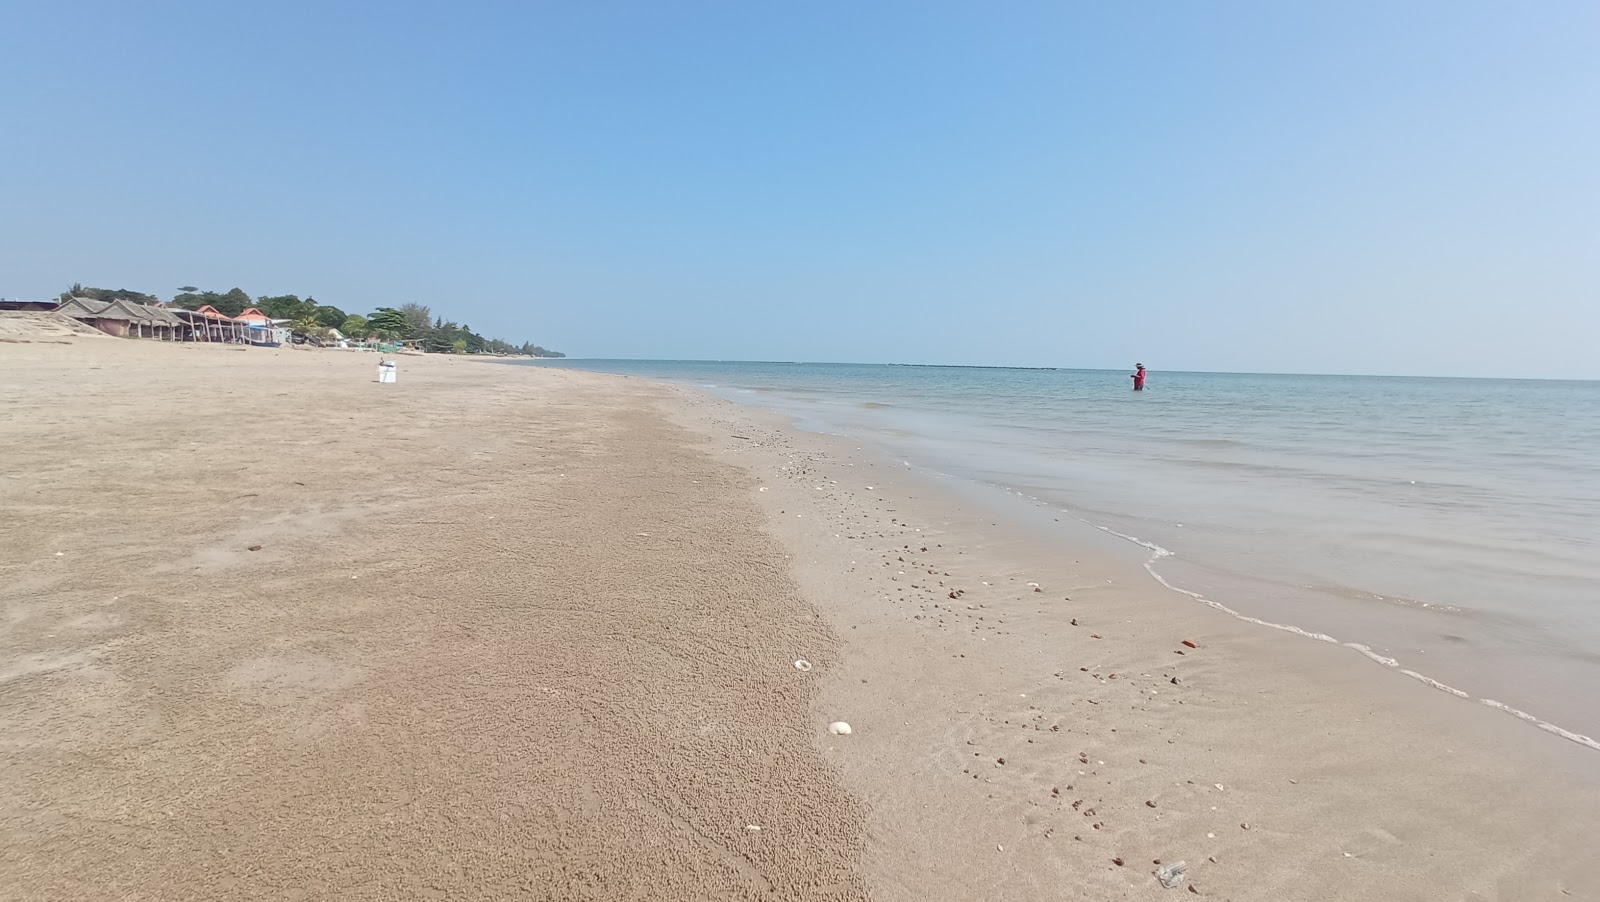 Foto af Chaosamran Beach - populært sted blandt afslapningskendere